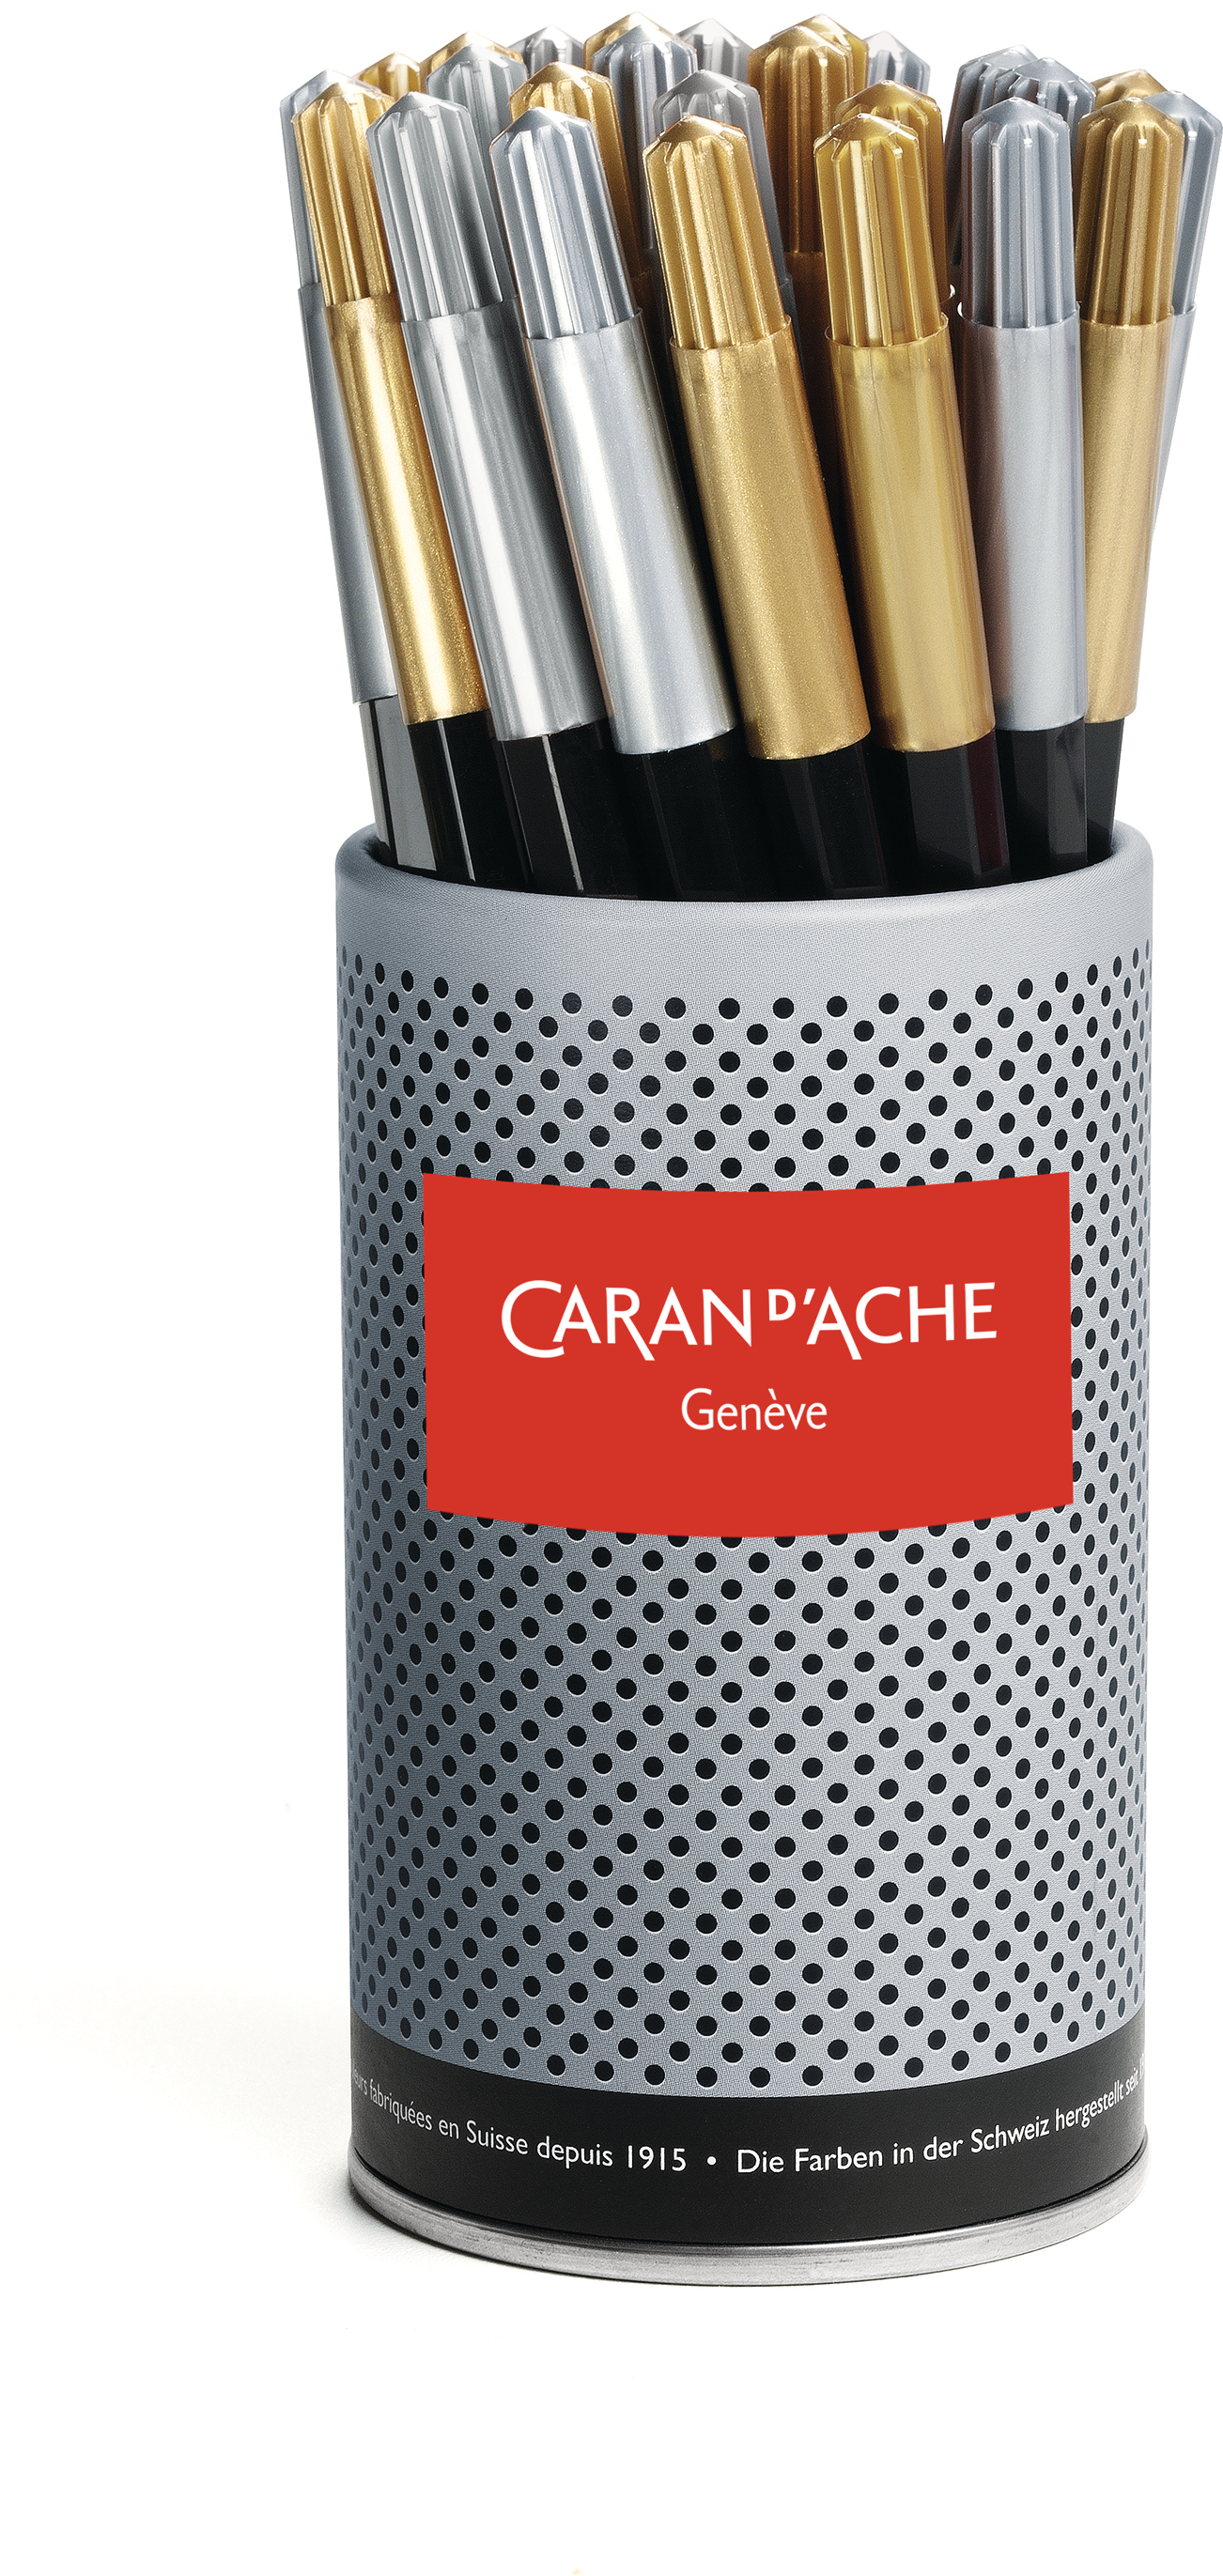 CARAN D'ACHE Crayon de couleur Fancolor 285.103 metallic 30 pcs.